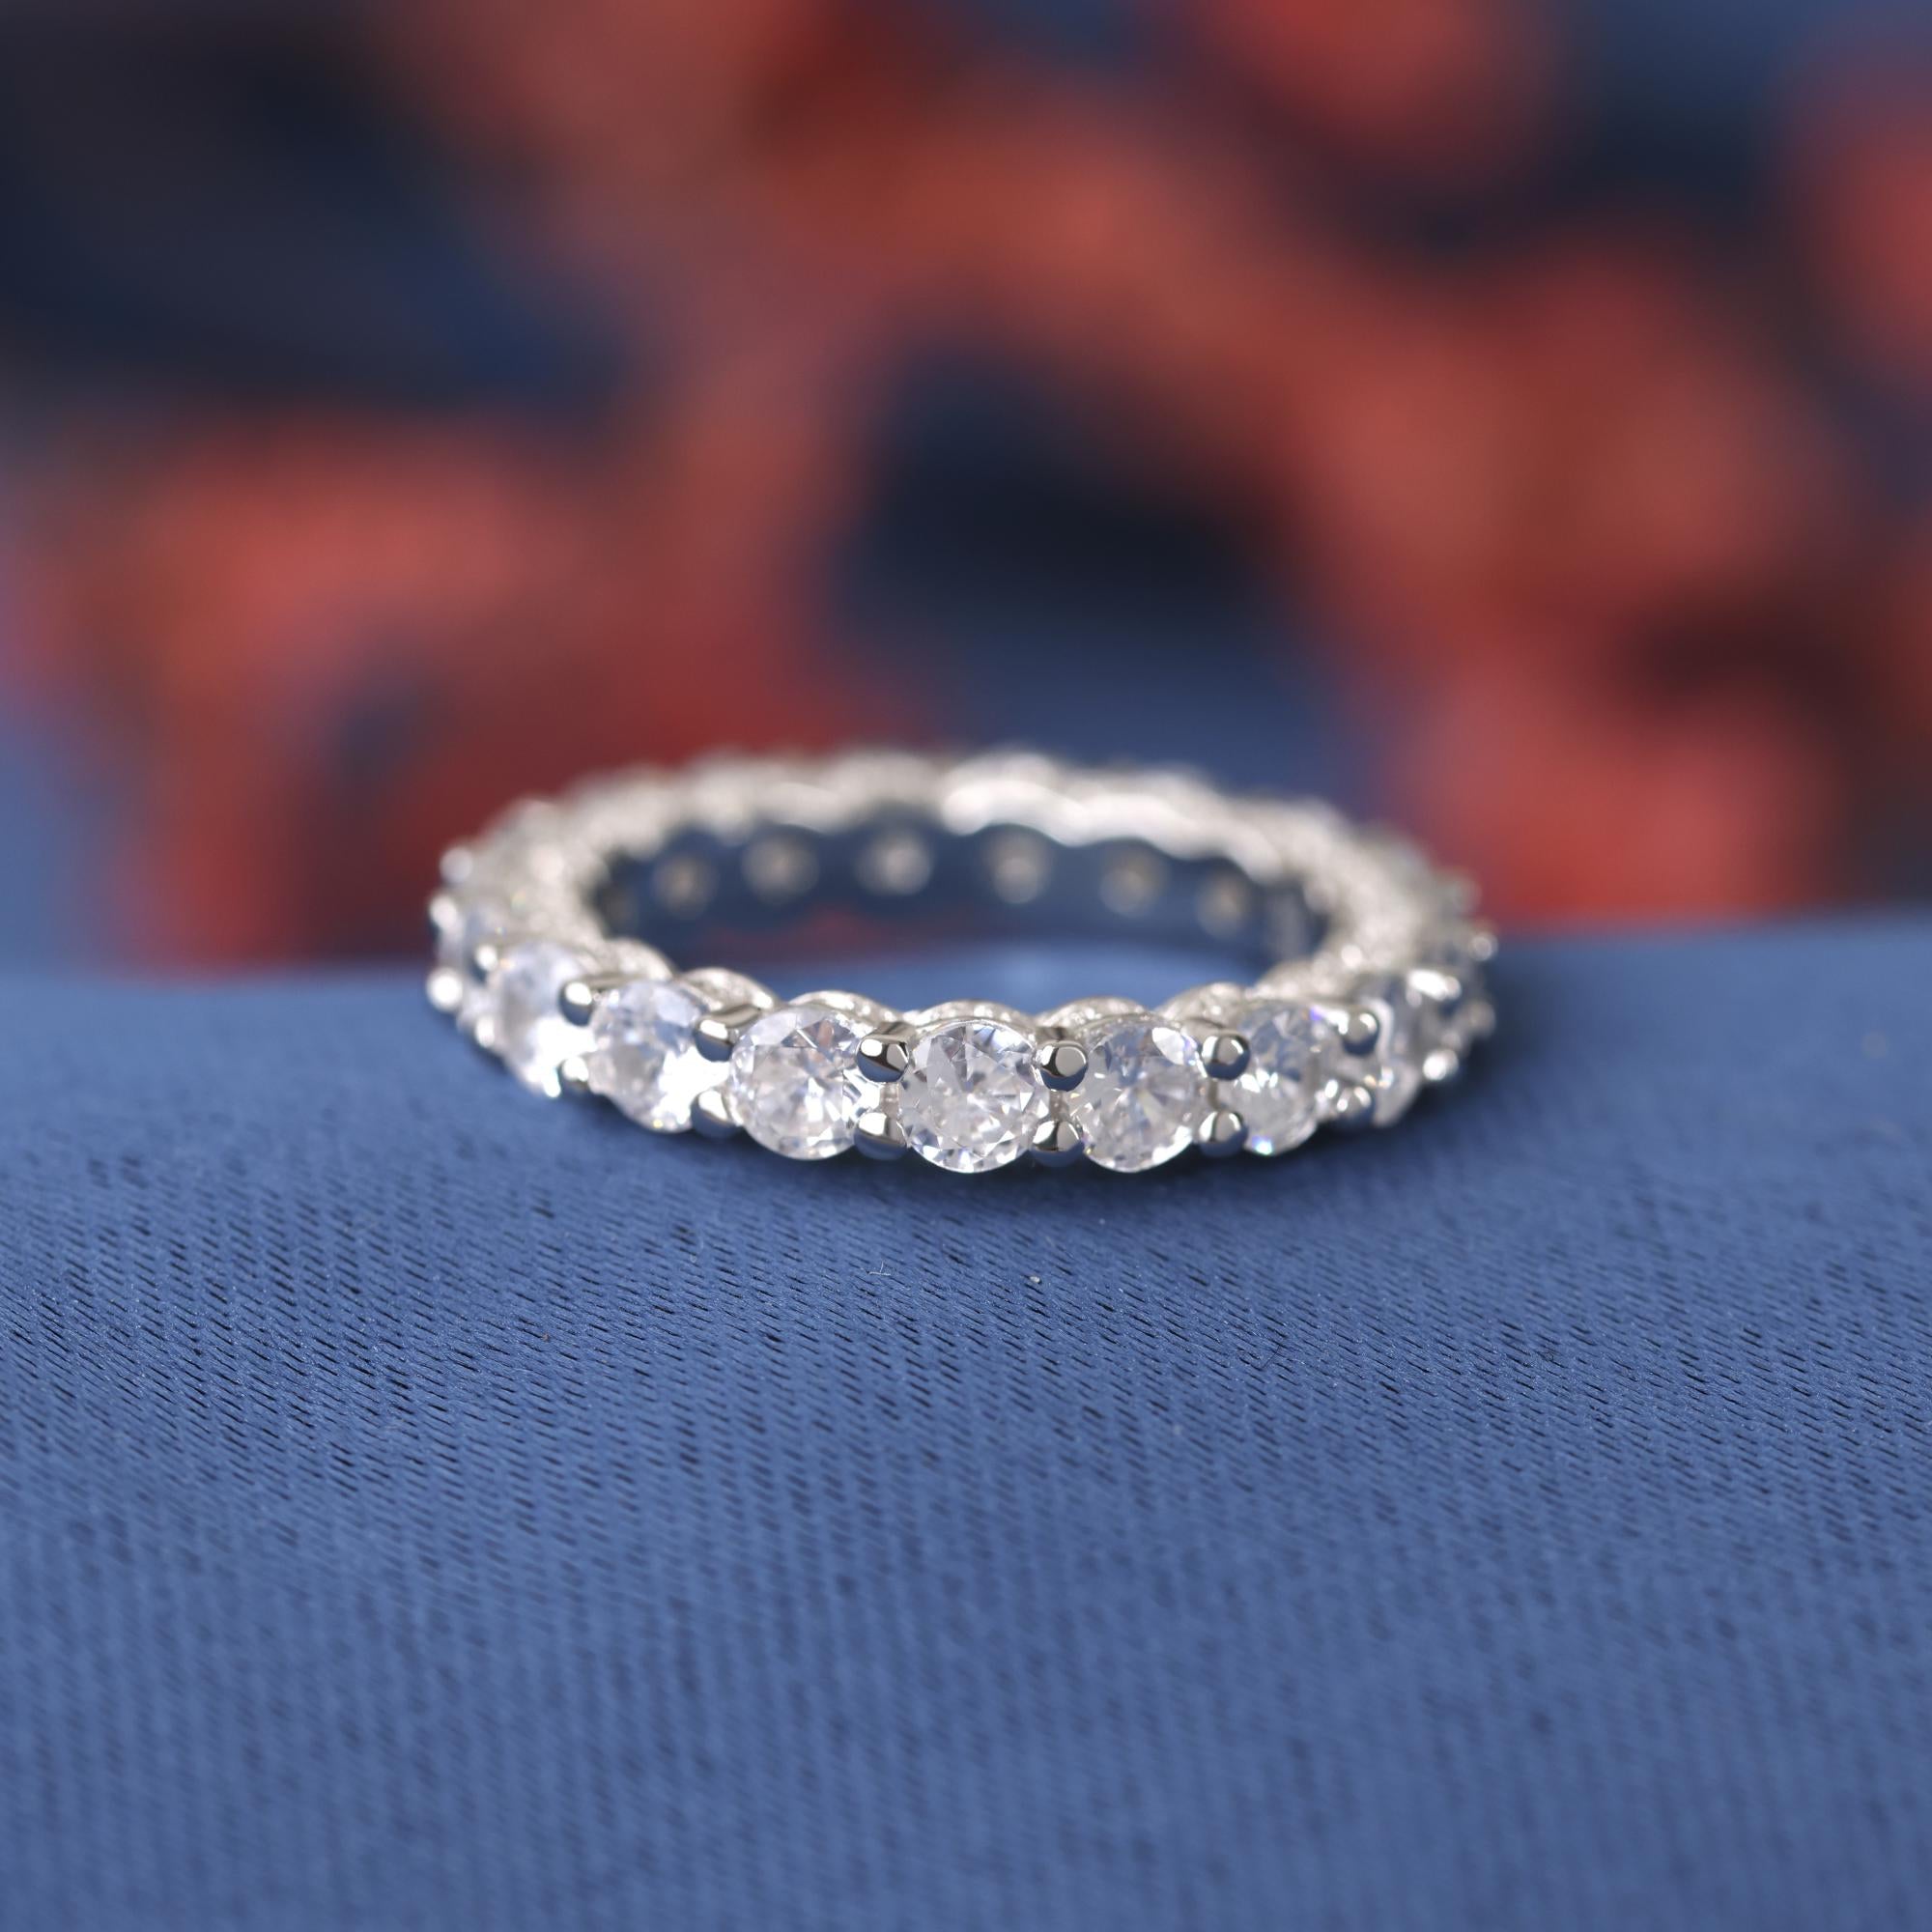 Princess Cut Engagement Ring, Princess Moissanite Wedding Ring set